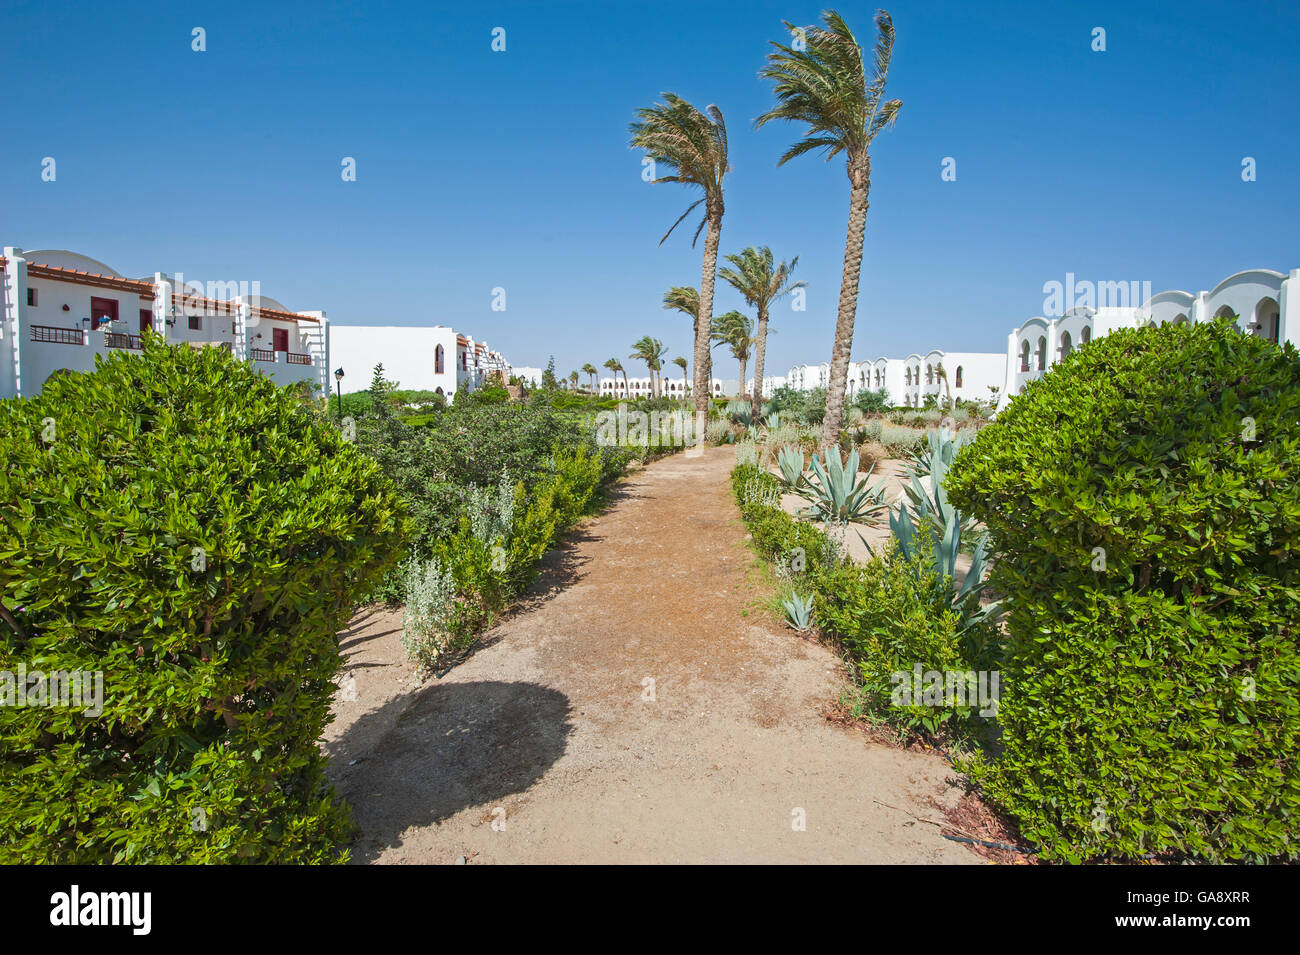 Formale Gärten auf dem Gelände eines luxuriösen Tropical Hotel Resort Stockfoto